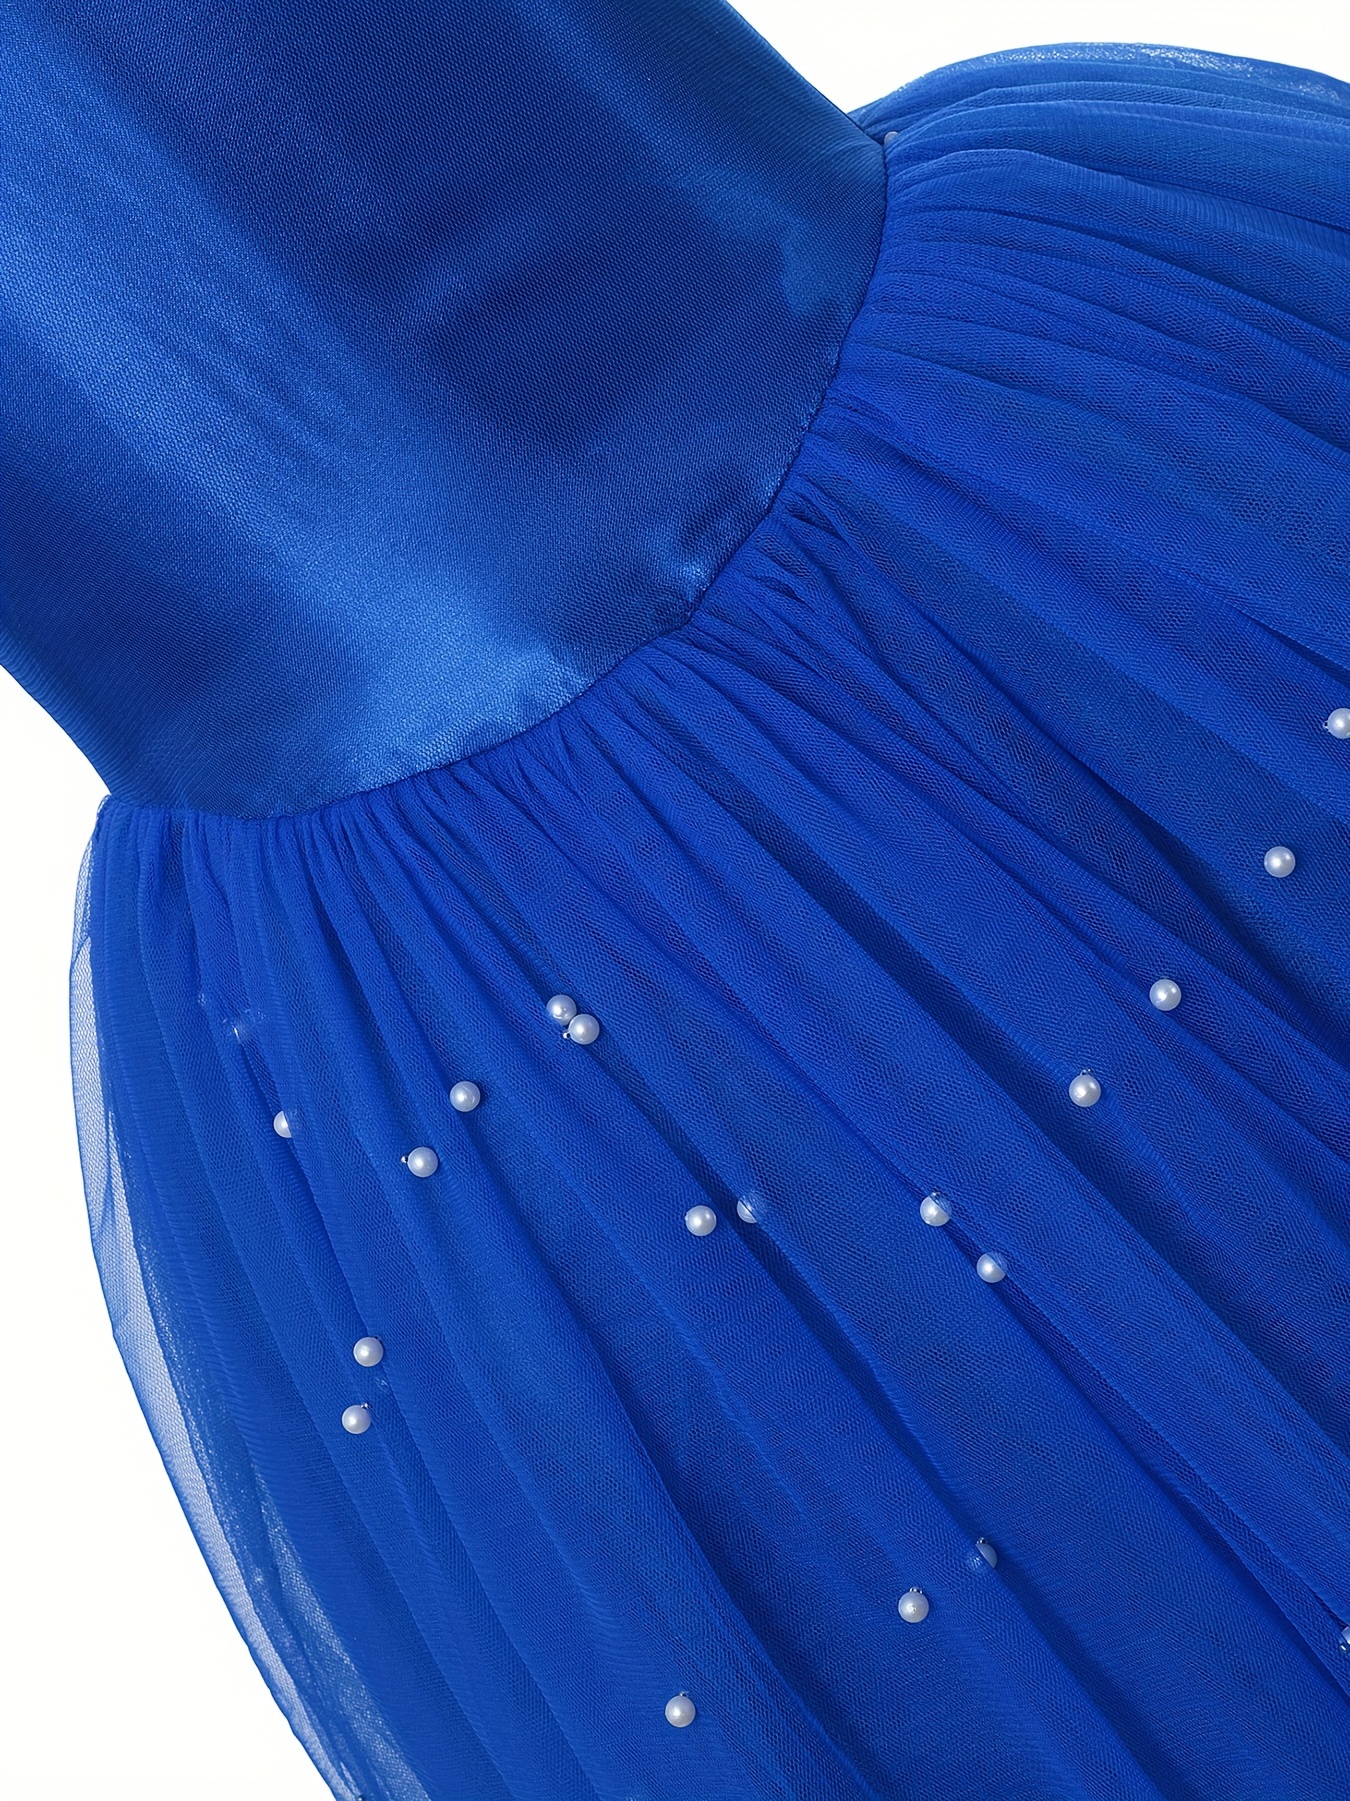 Vestito Principessa Blu Elegante Ragazze Decorato Diamanti - Temu Italy